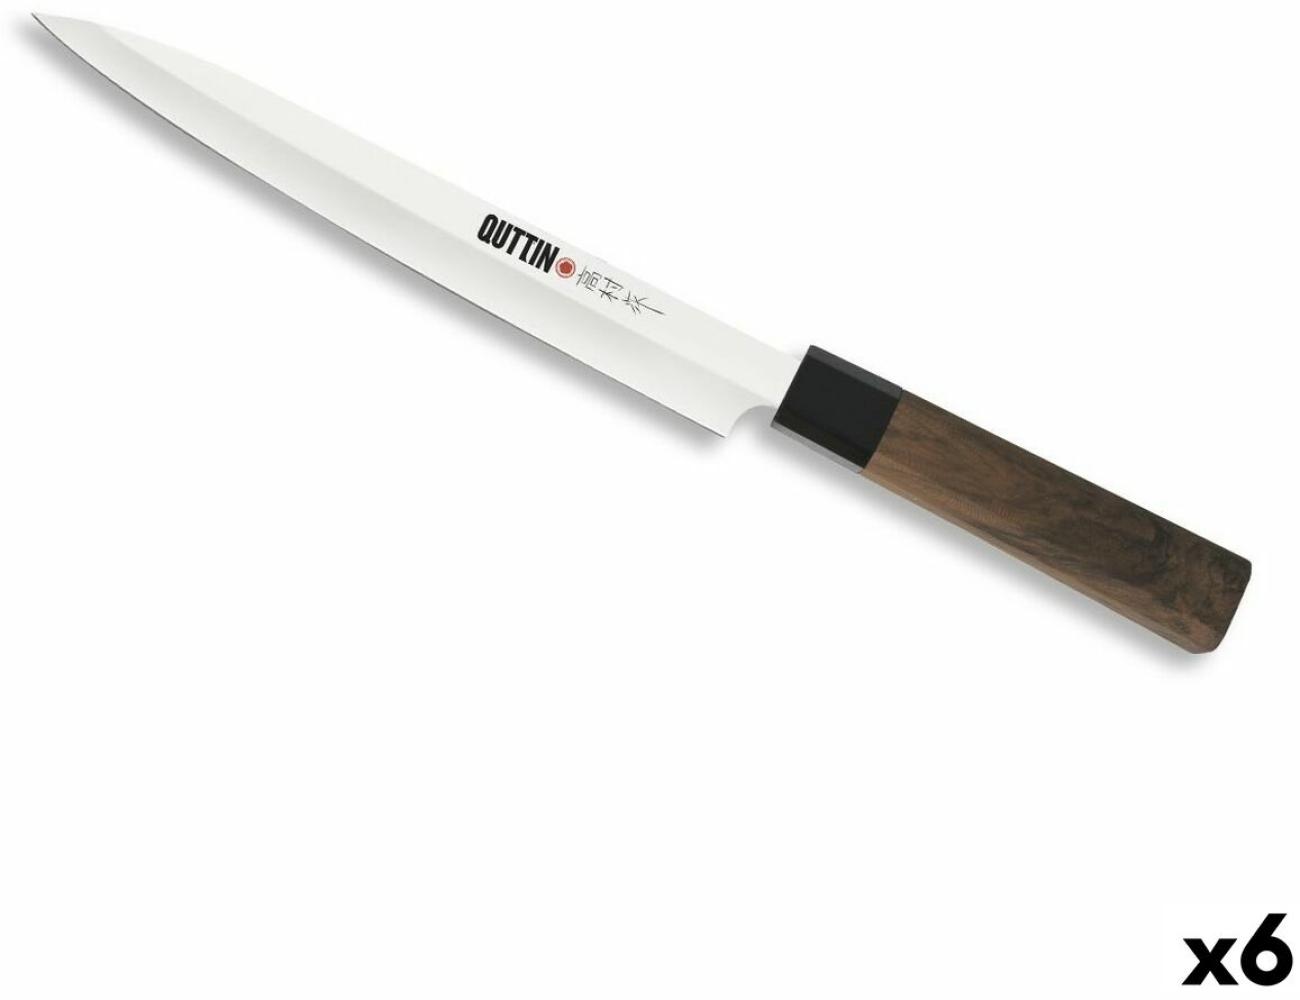 Revolutioniere deine Küche mit dem Quttin Yanagiba Takamura Messerset! Bild 1